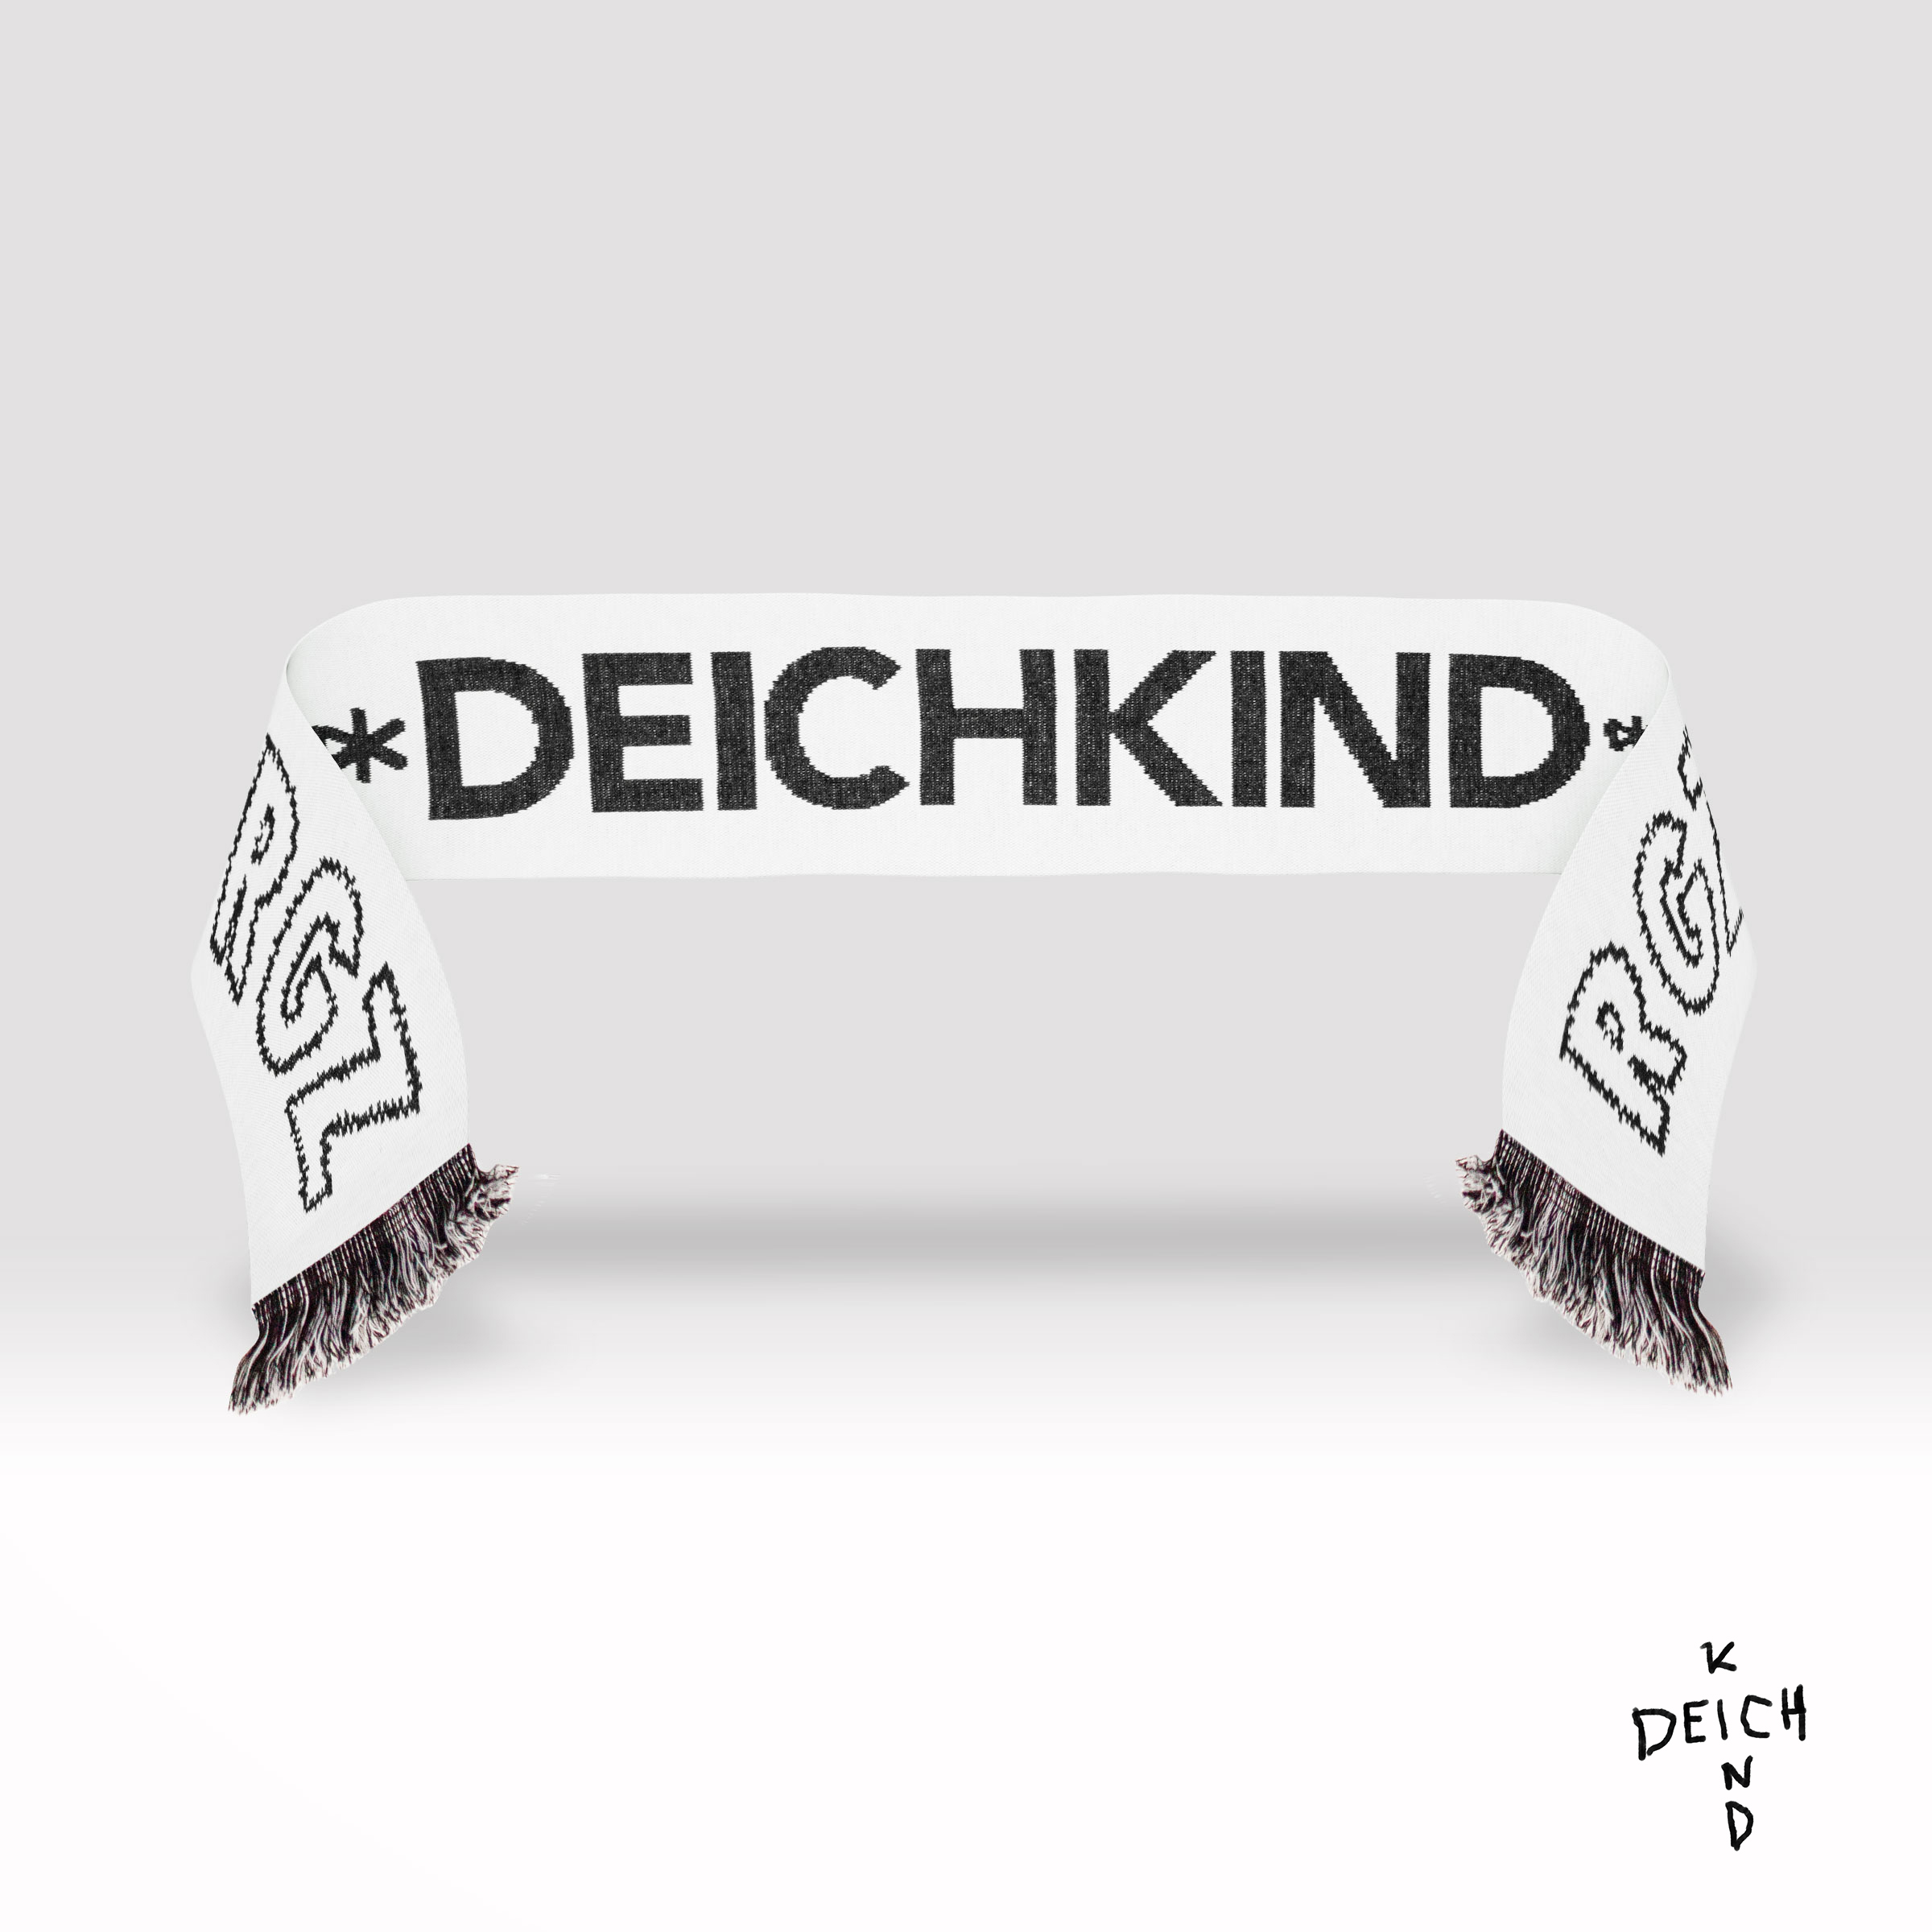 Deichkind - Wer Sagt Das? - (Richtig Edition) Limited Box, Denn Gute (CD)